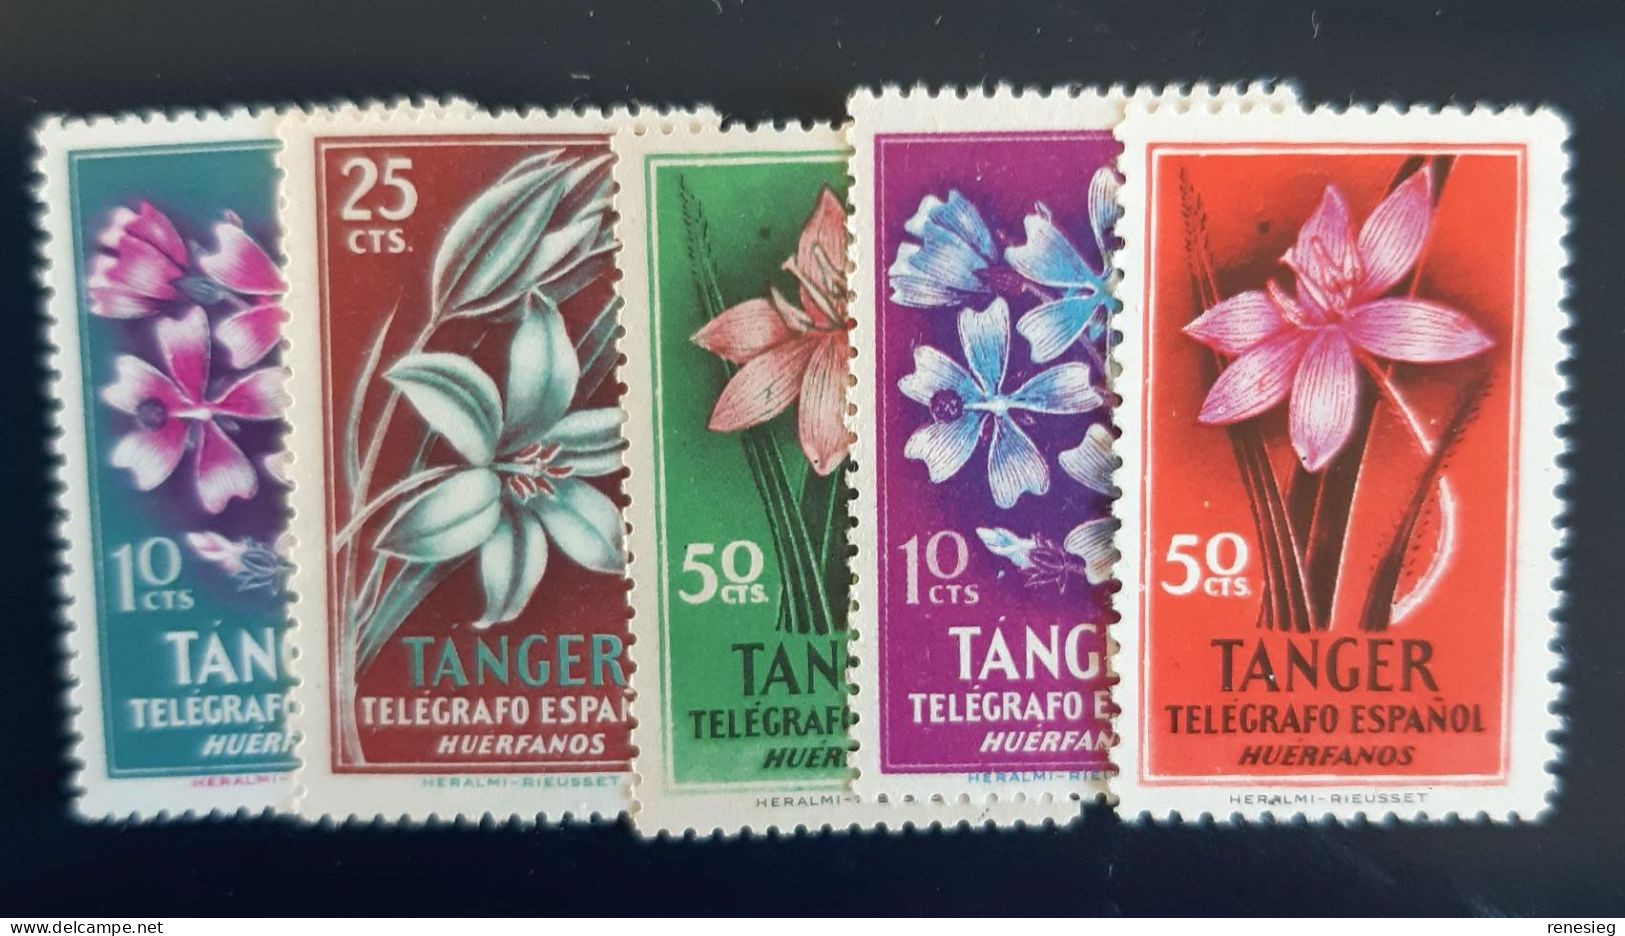 Telegrafo Fleurs MNH - Marocco Spagnolo